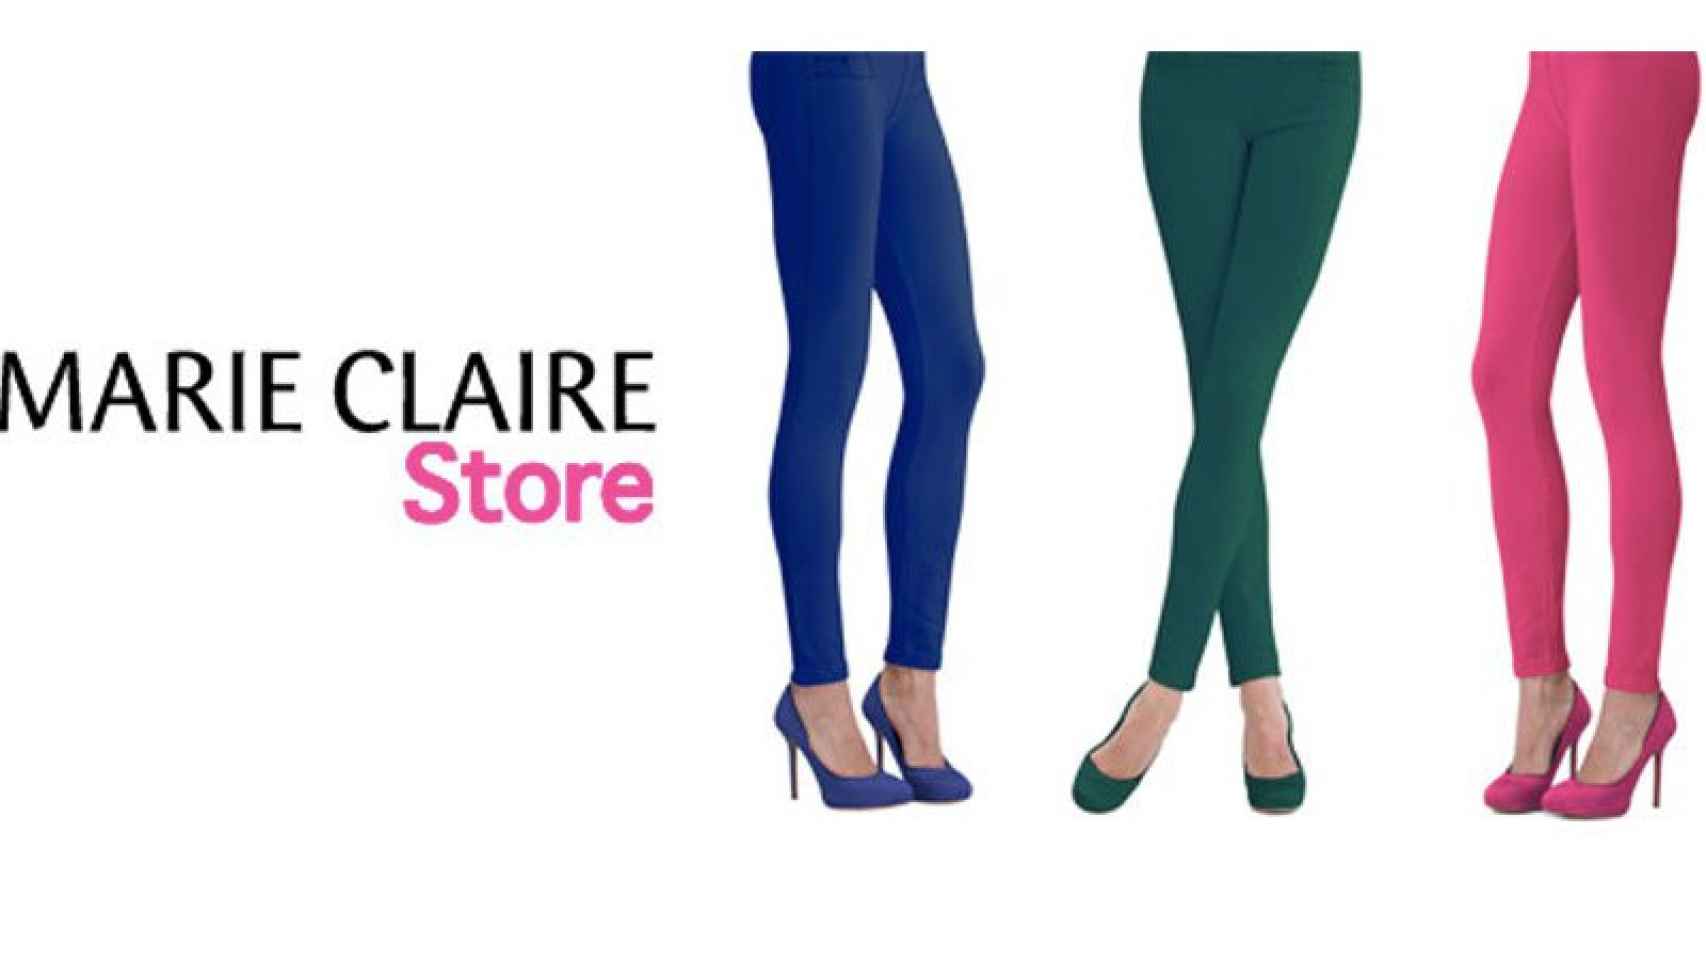 Marie Claire se dedica a la venta de medias, pantys y ropa interior